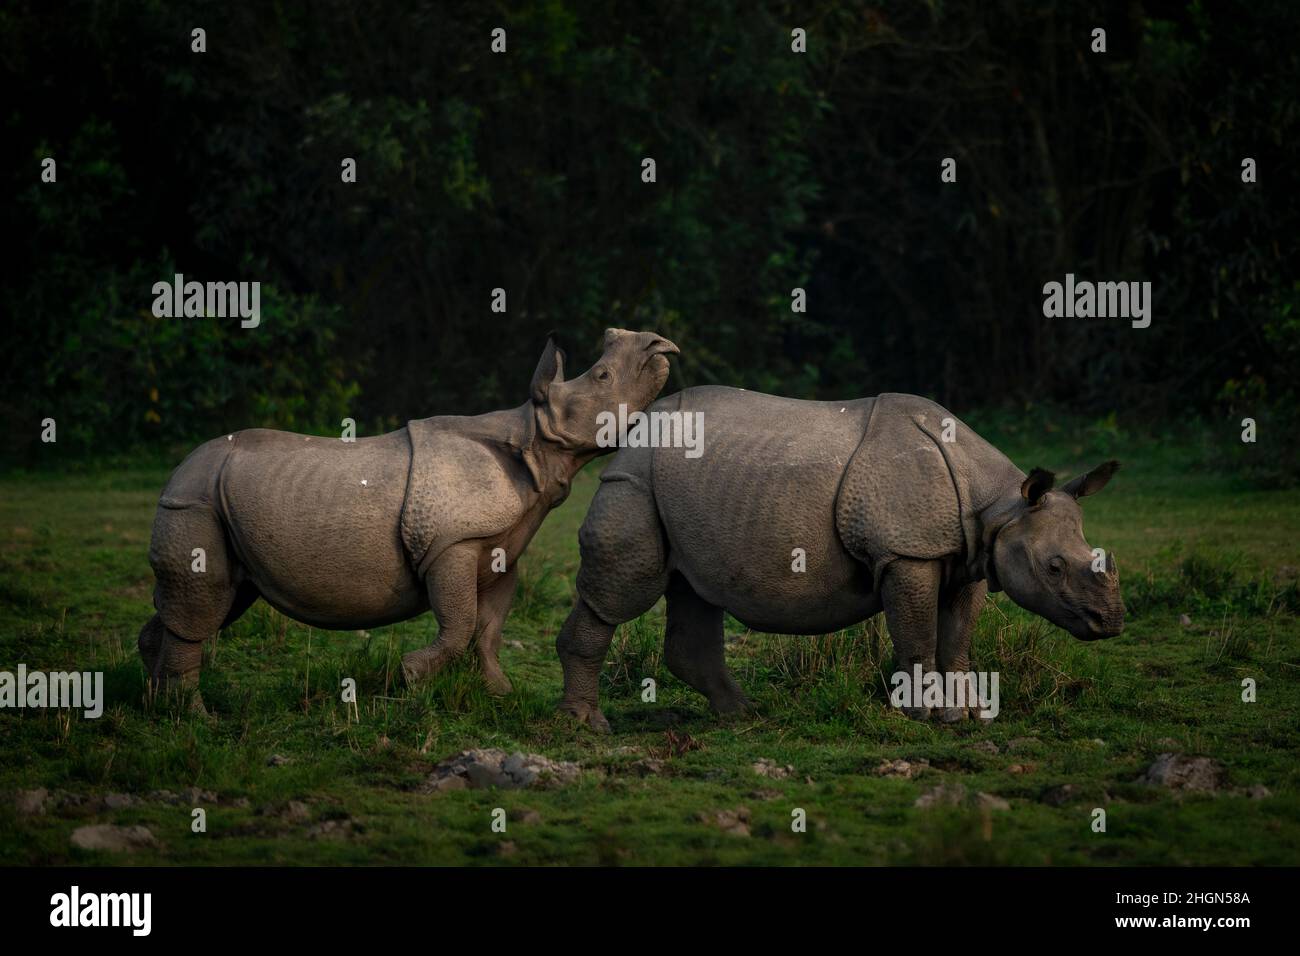 Un veau de rhinocéros joue avec sa mère en fin de soirée au parc national de Kaziranga, Assam, Inde Banque D'Images